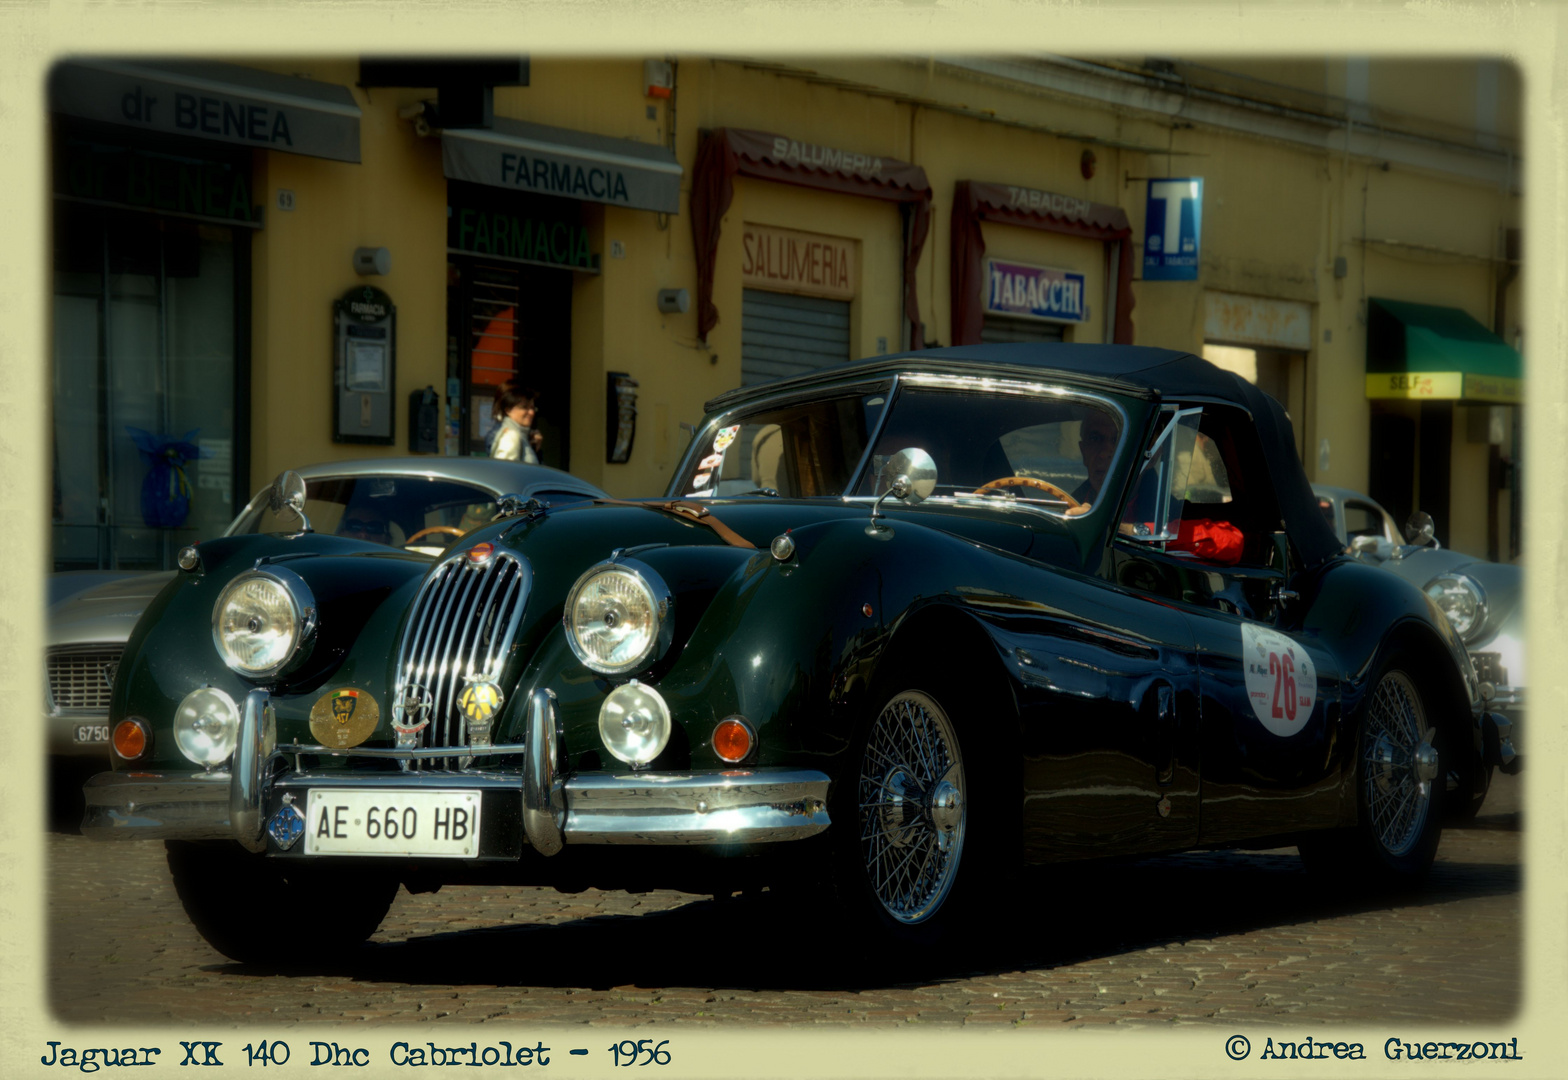 Jaguar XK 140 Dhc Cabriolet - 1956